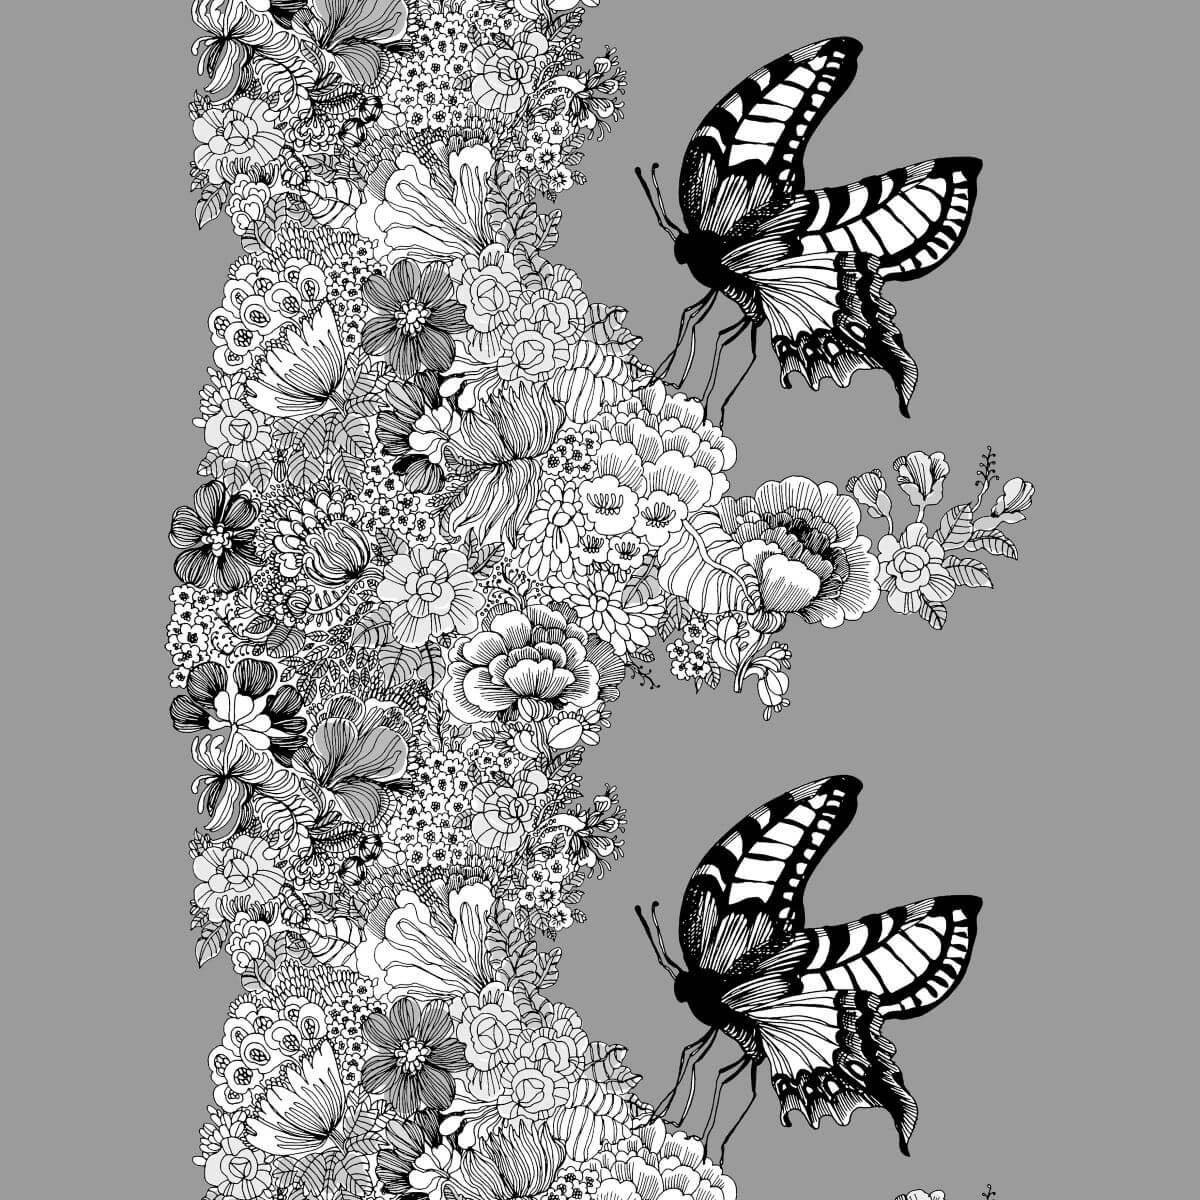 Pościel w motyle MON AMOUR. Wzór w czarno białe motyle i kwiaty na szarym tle. Skandynawski nowoczesny design